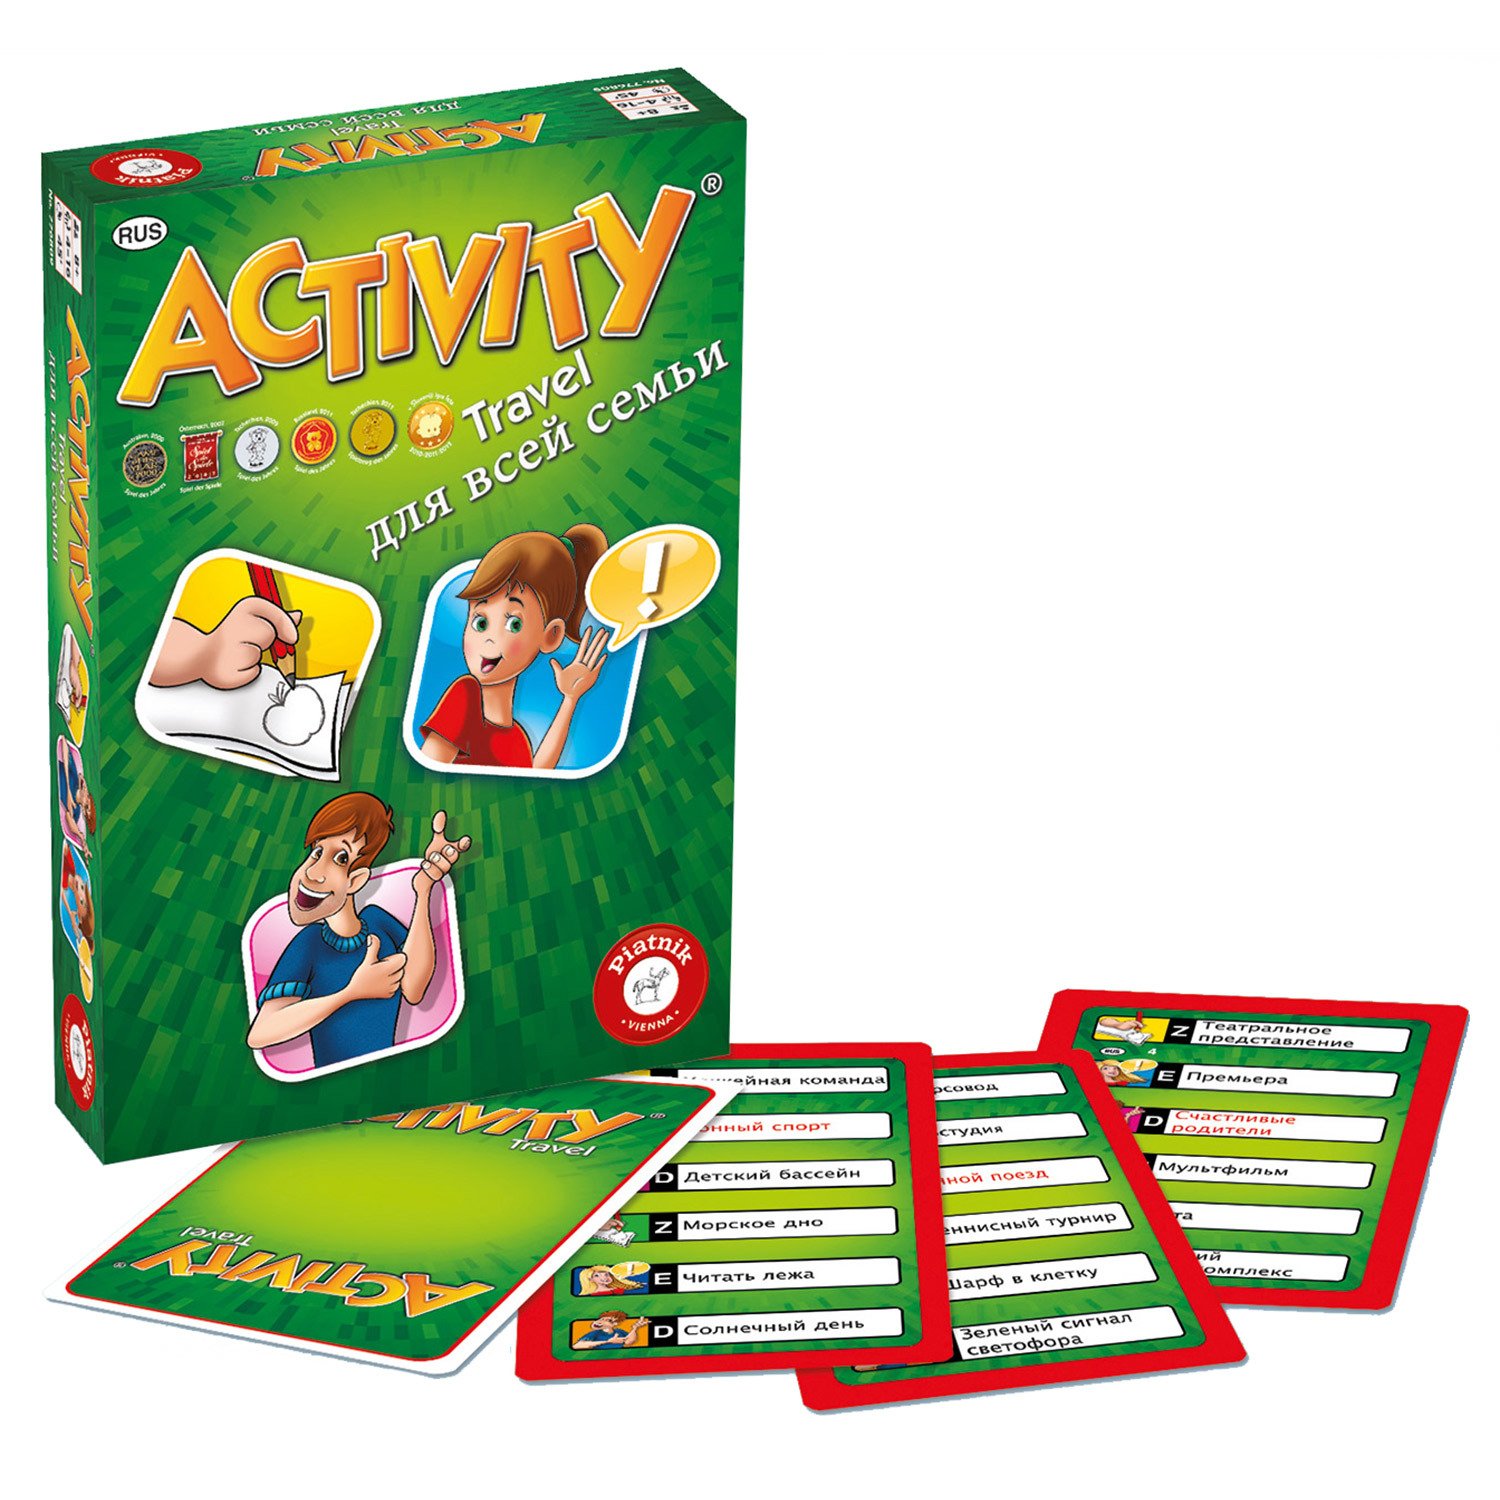 Игра настольная Piatnik Activity(Активити) для всей семьи 793295